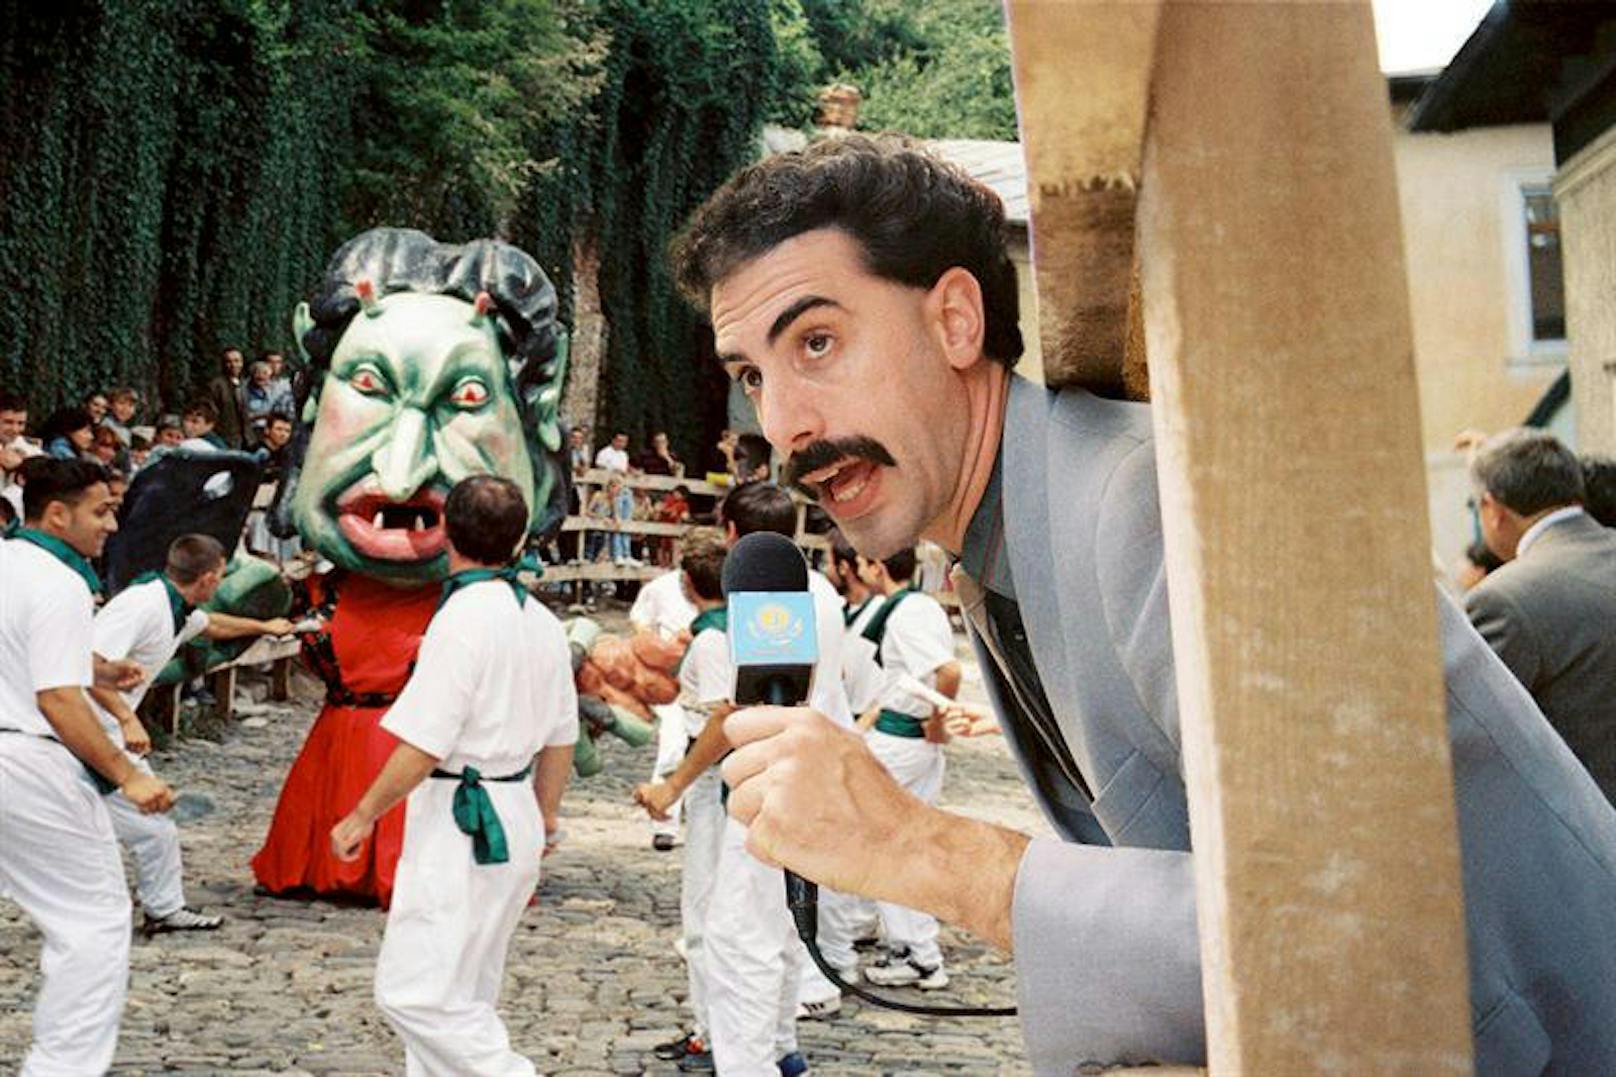 Darum will Sacha Baron Cohen nicht mehr "Borat" spielen